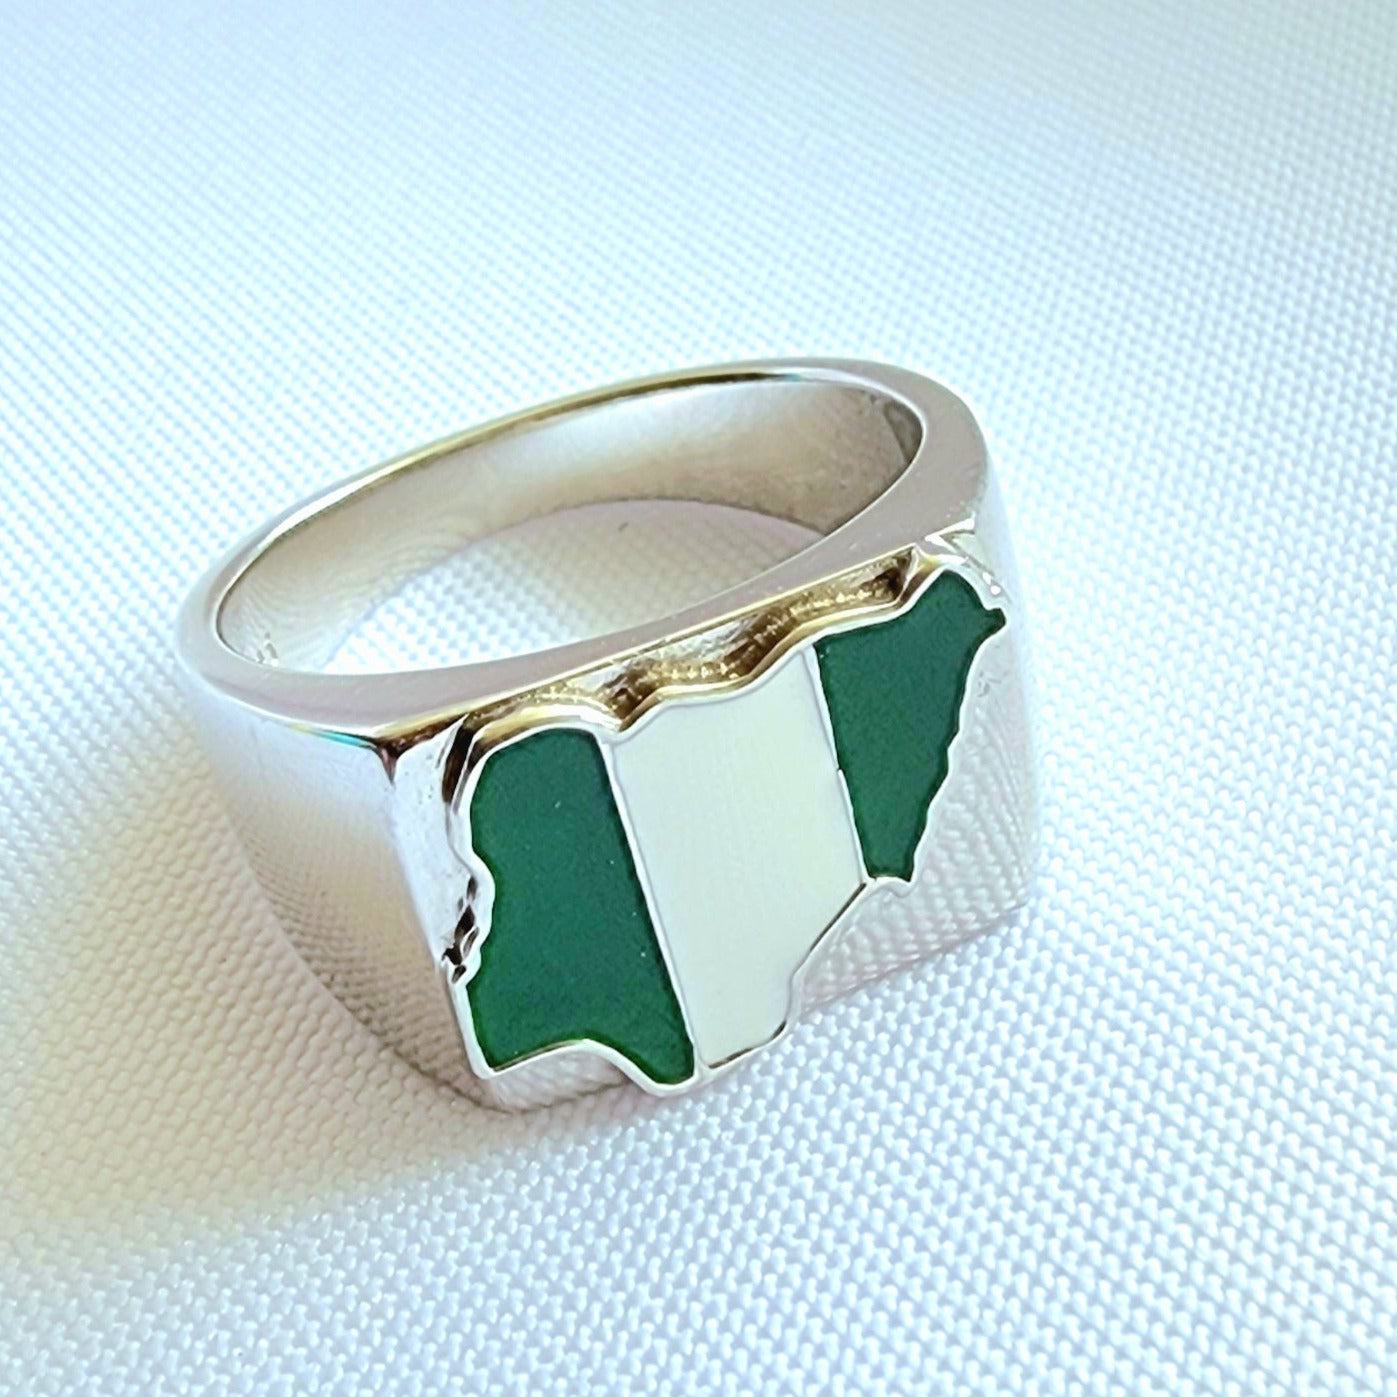 Nigeria "Damini" Ring